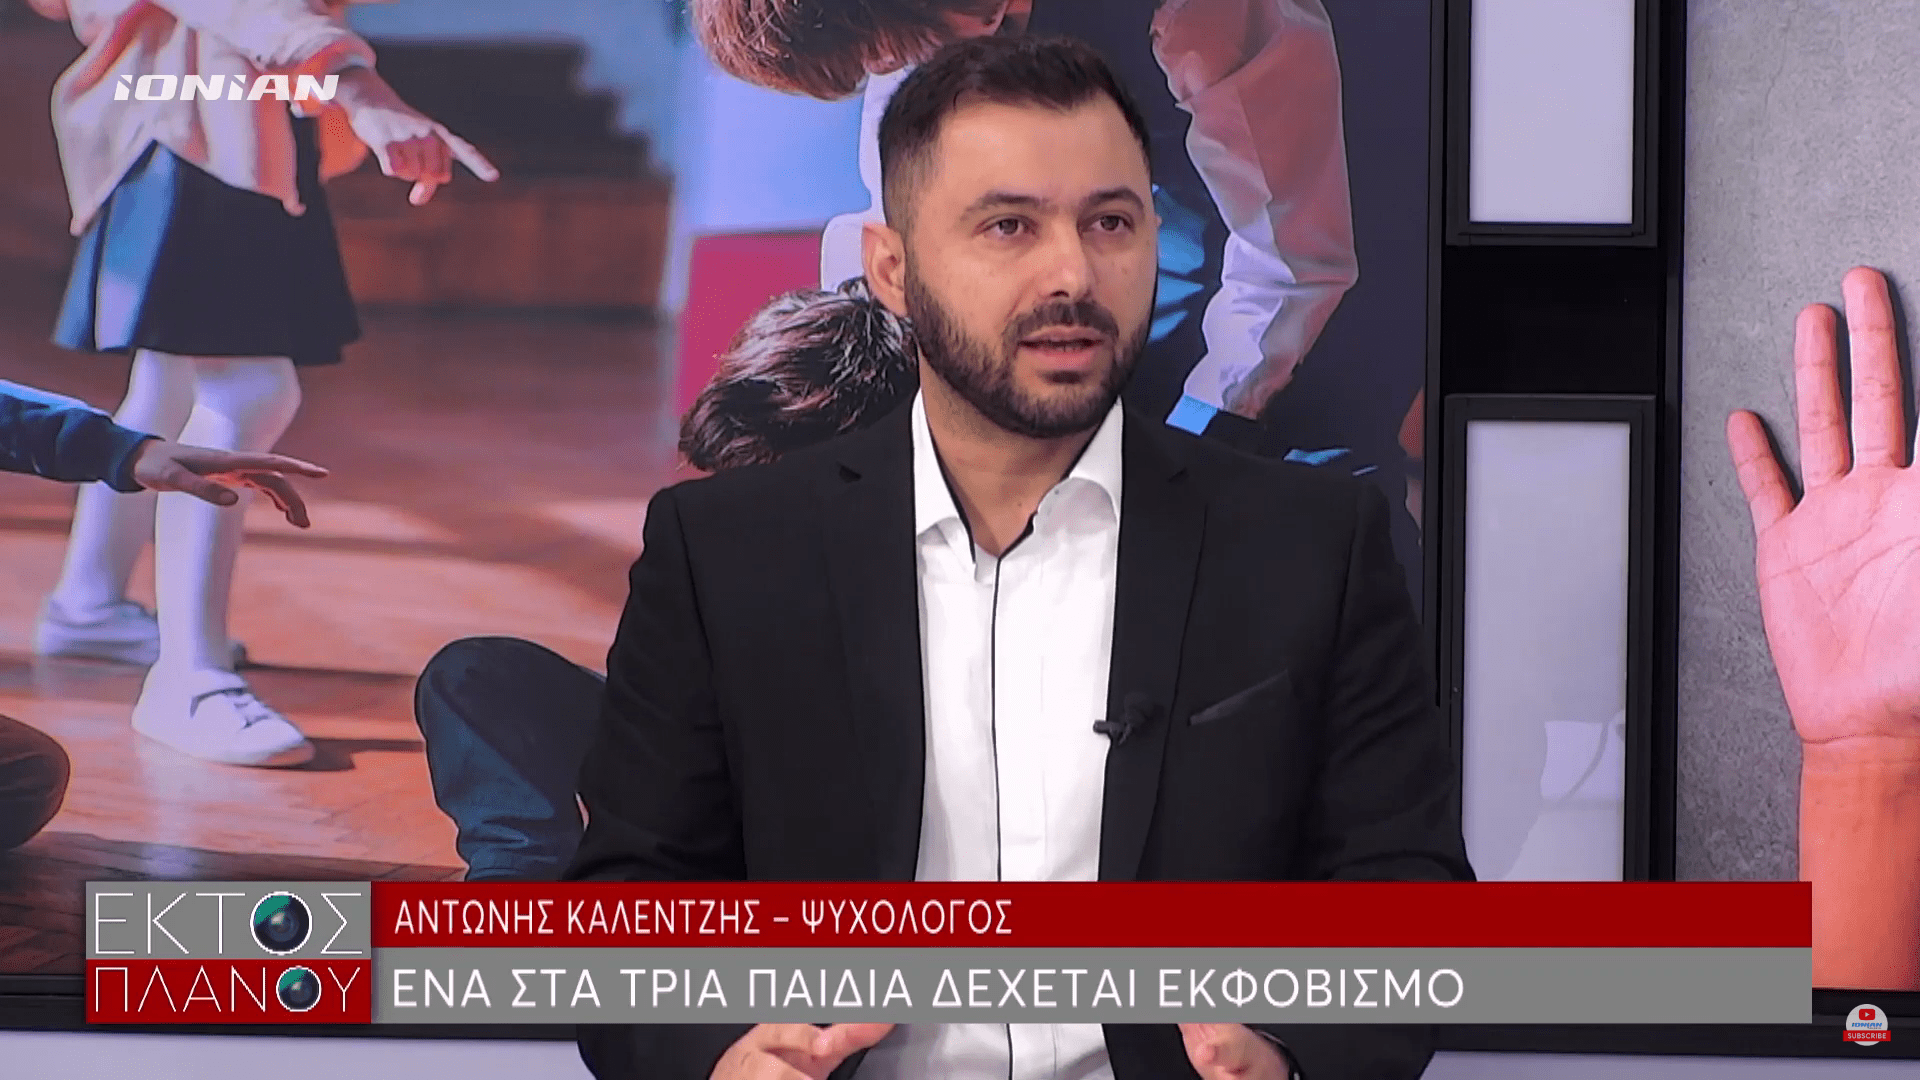 Βία και παραβατικότητα ανηλίκων – Ionian TV